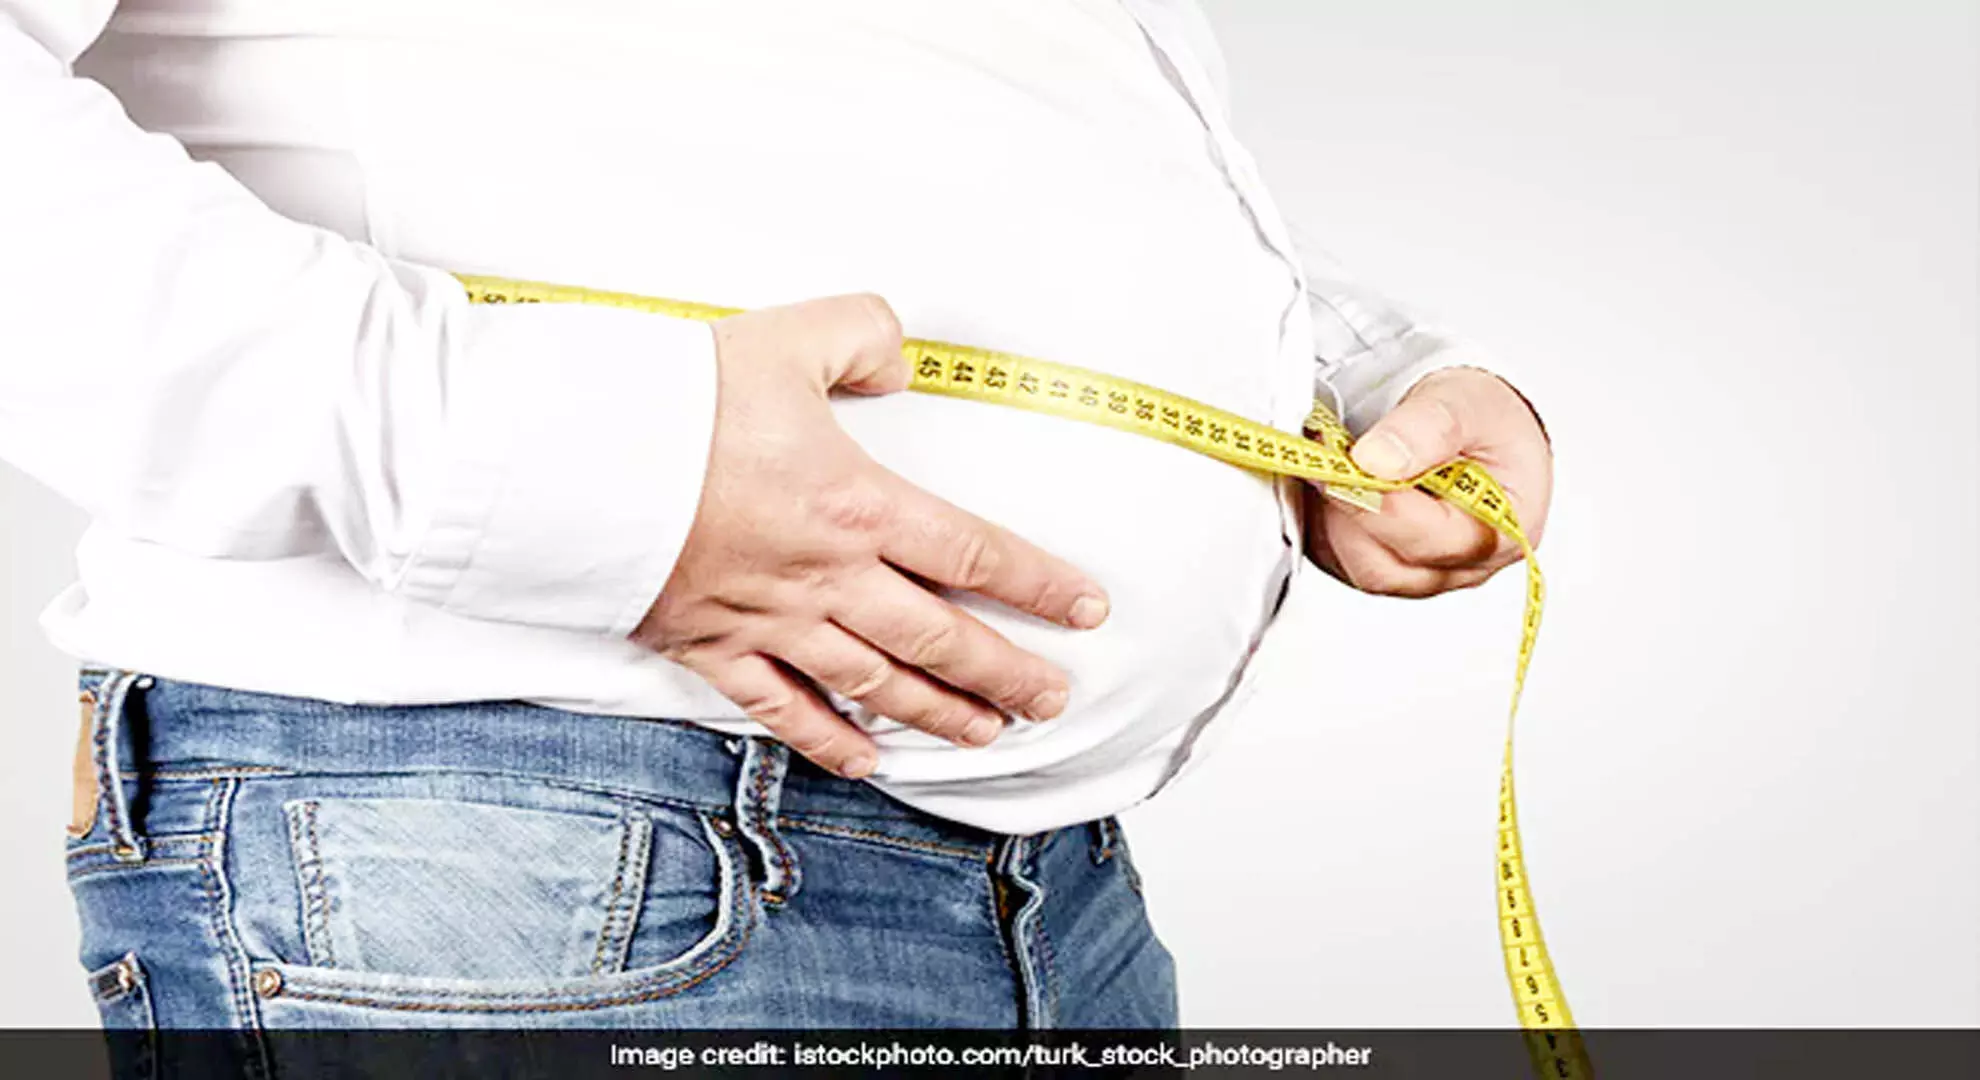 दुनिया भर में 1 अरब से अधिक लोग मोटापे से ग्रस्त हैं: अध्ययन